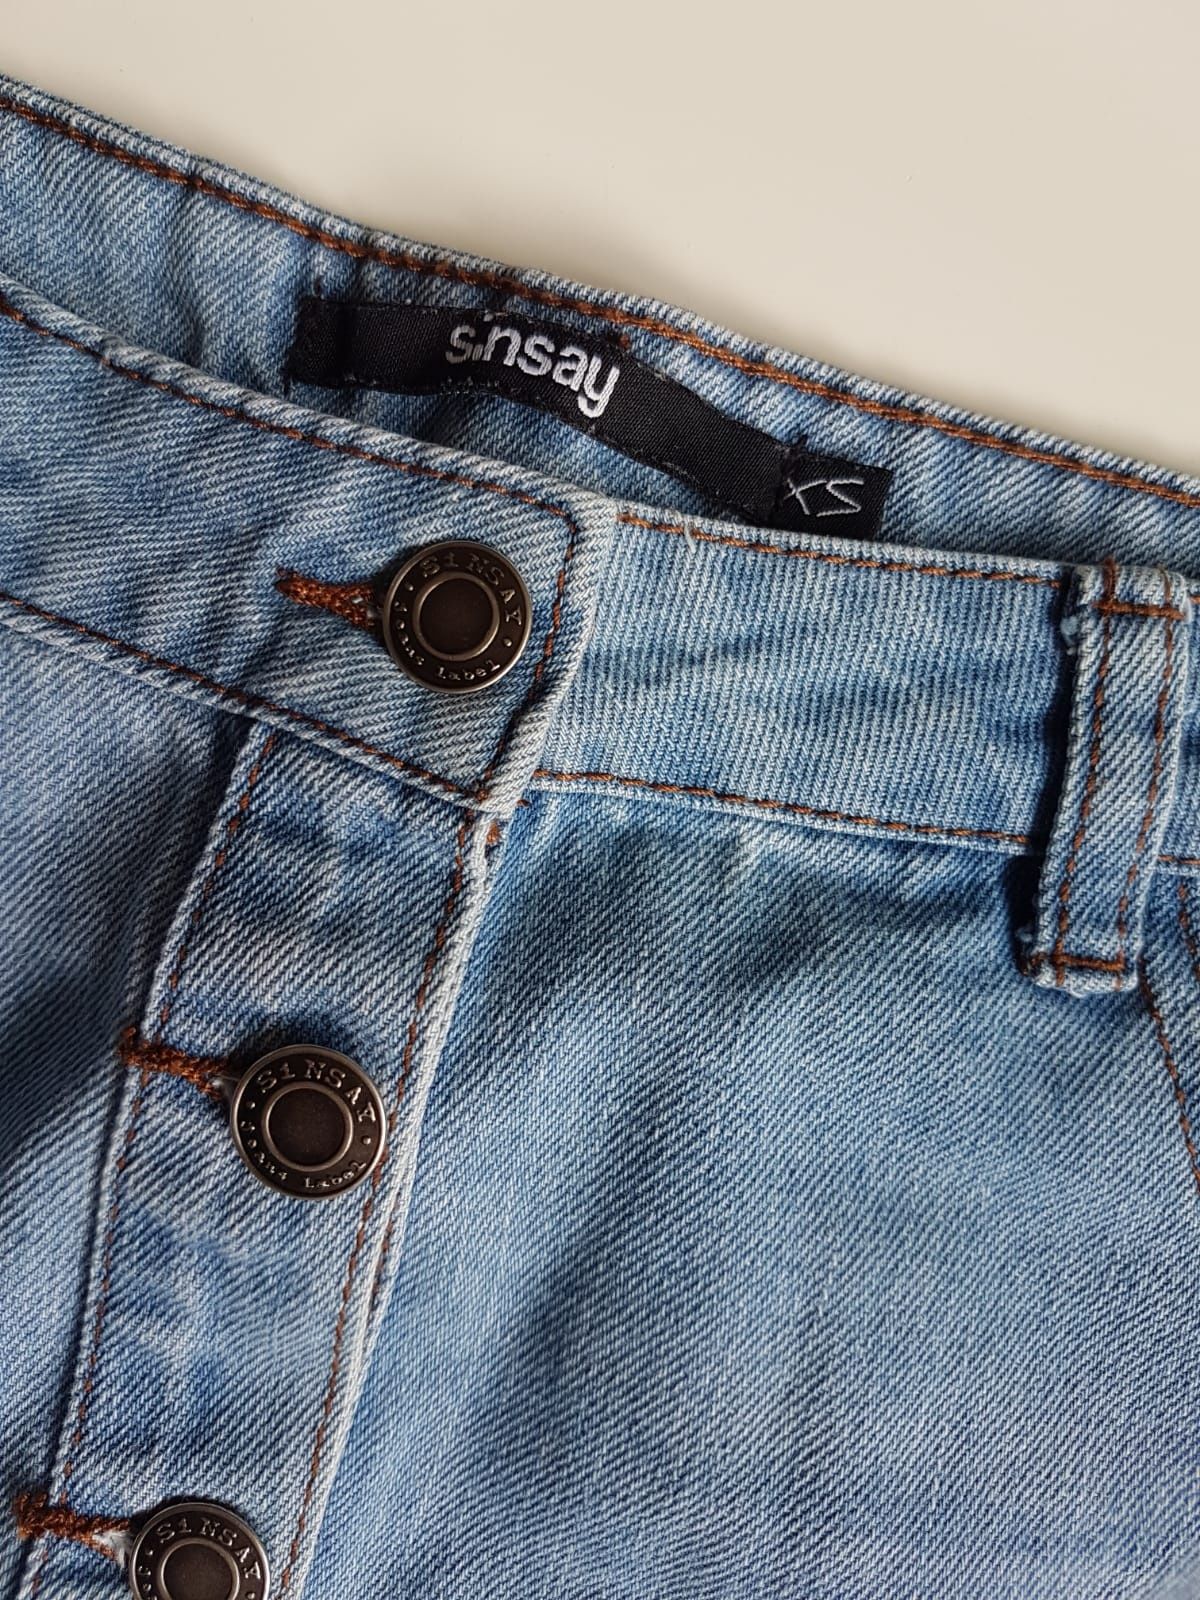 Krótka spódniczka damska sinsay XS S mini jeans